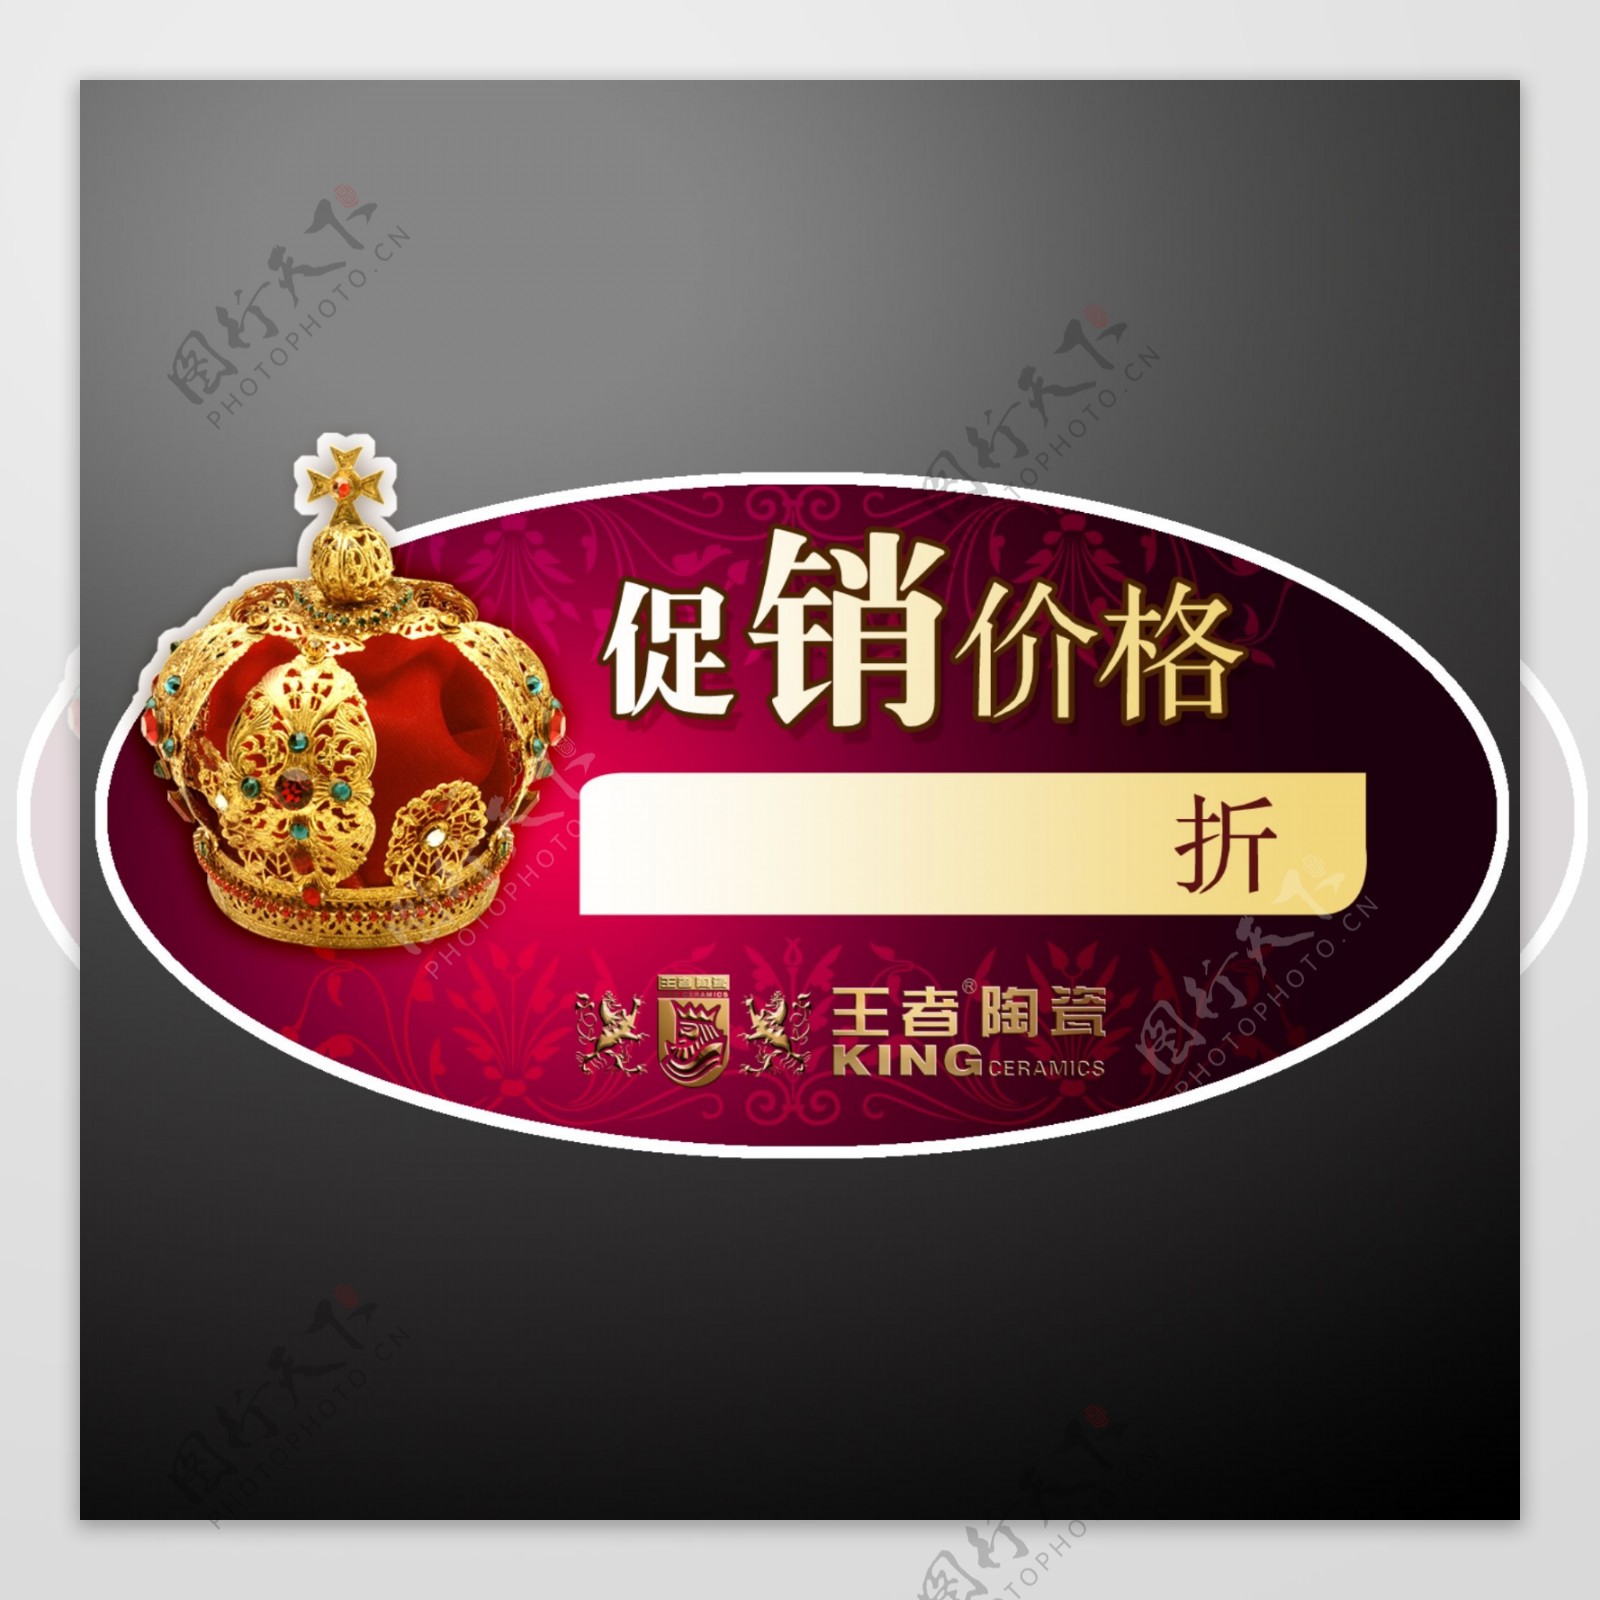 王者陶瓷促销特价标签图片